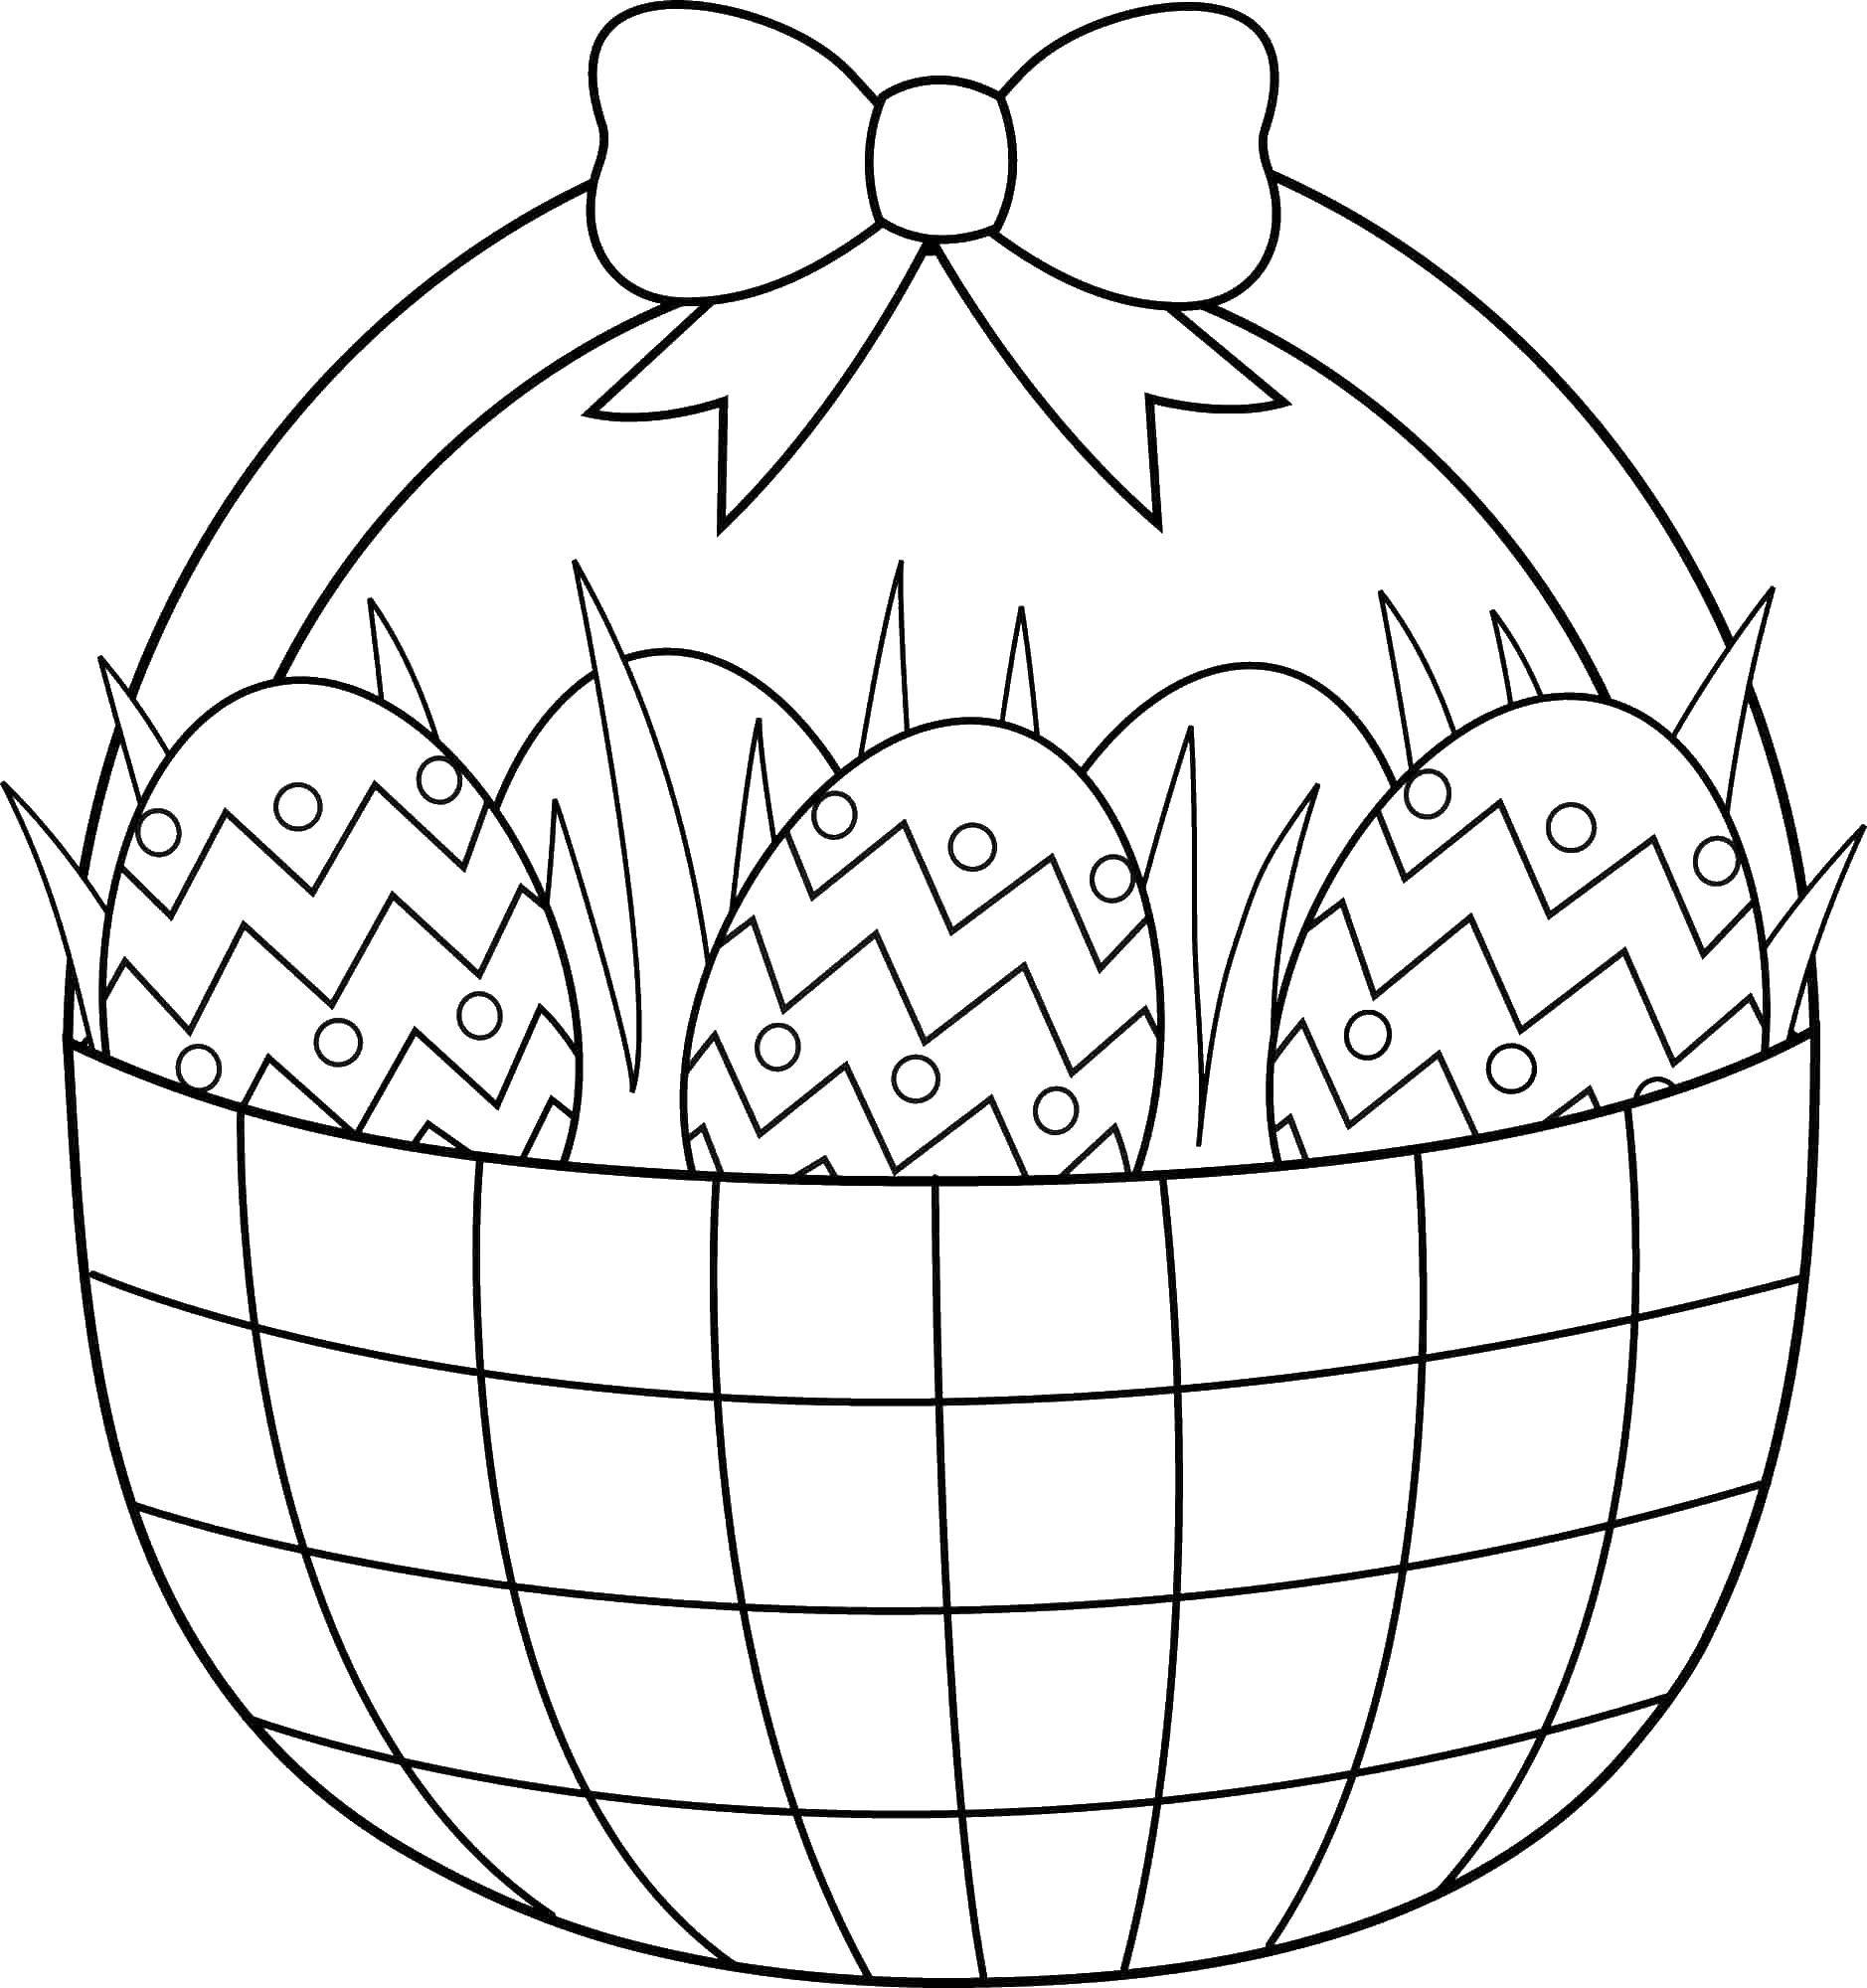 Название: Раскраска Корзина яиц с бантом. Категория: Узоры для раскрашивания яиц. Теги: корзина, яйца, бантик.